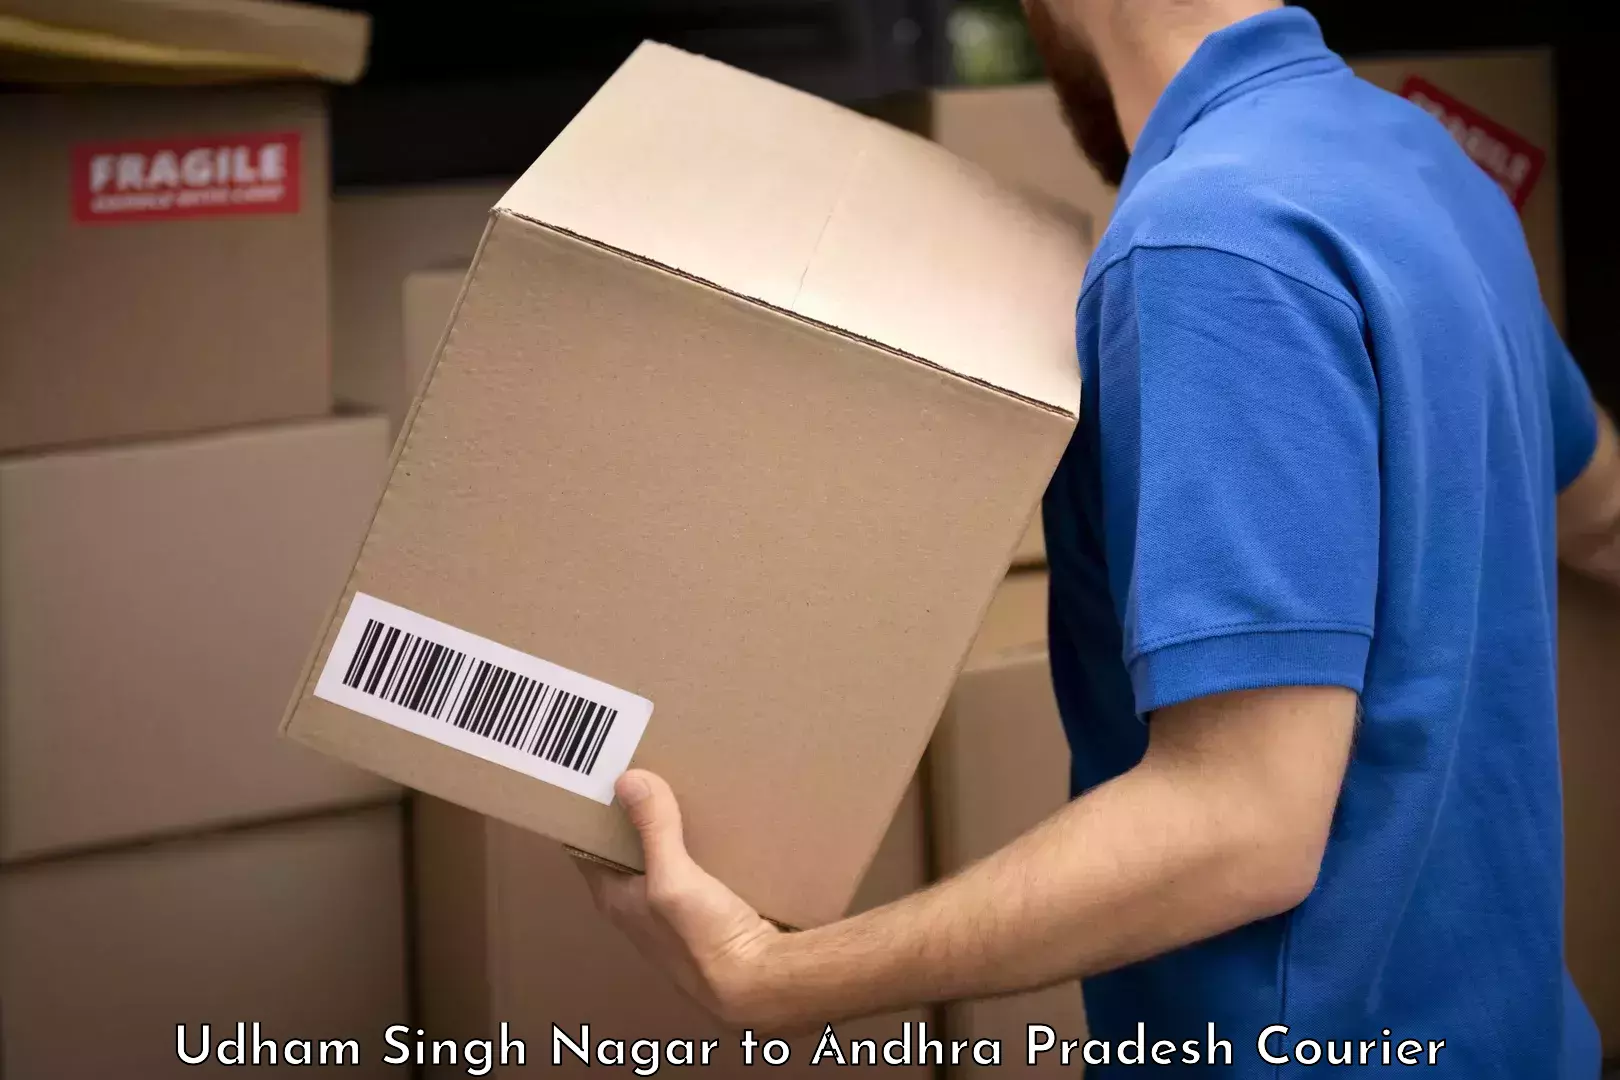 Luggage shipment tracking Udham Singh Nagar to Andhra Pradesh